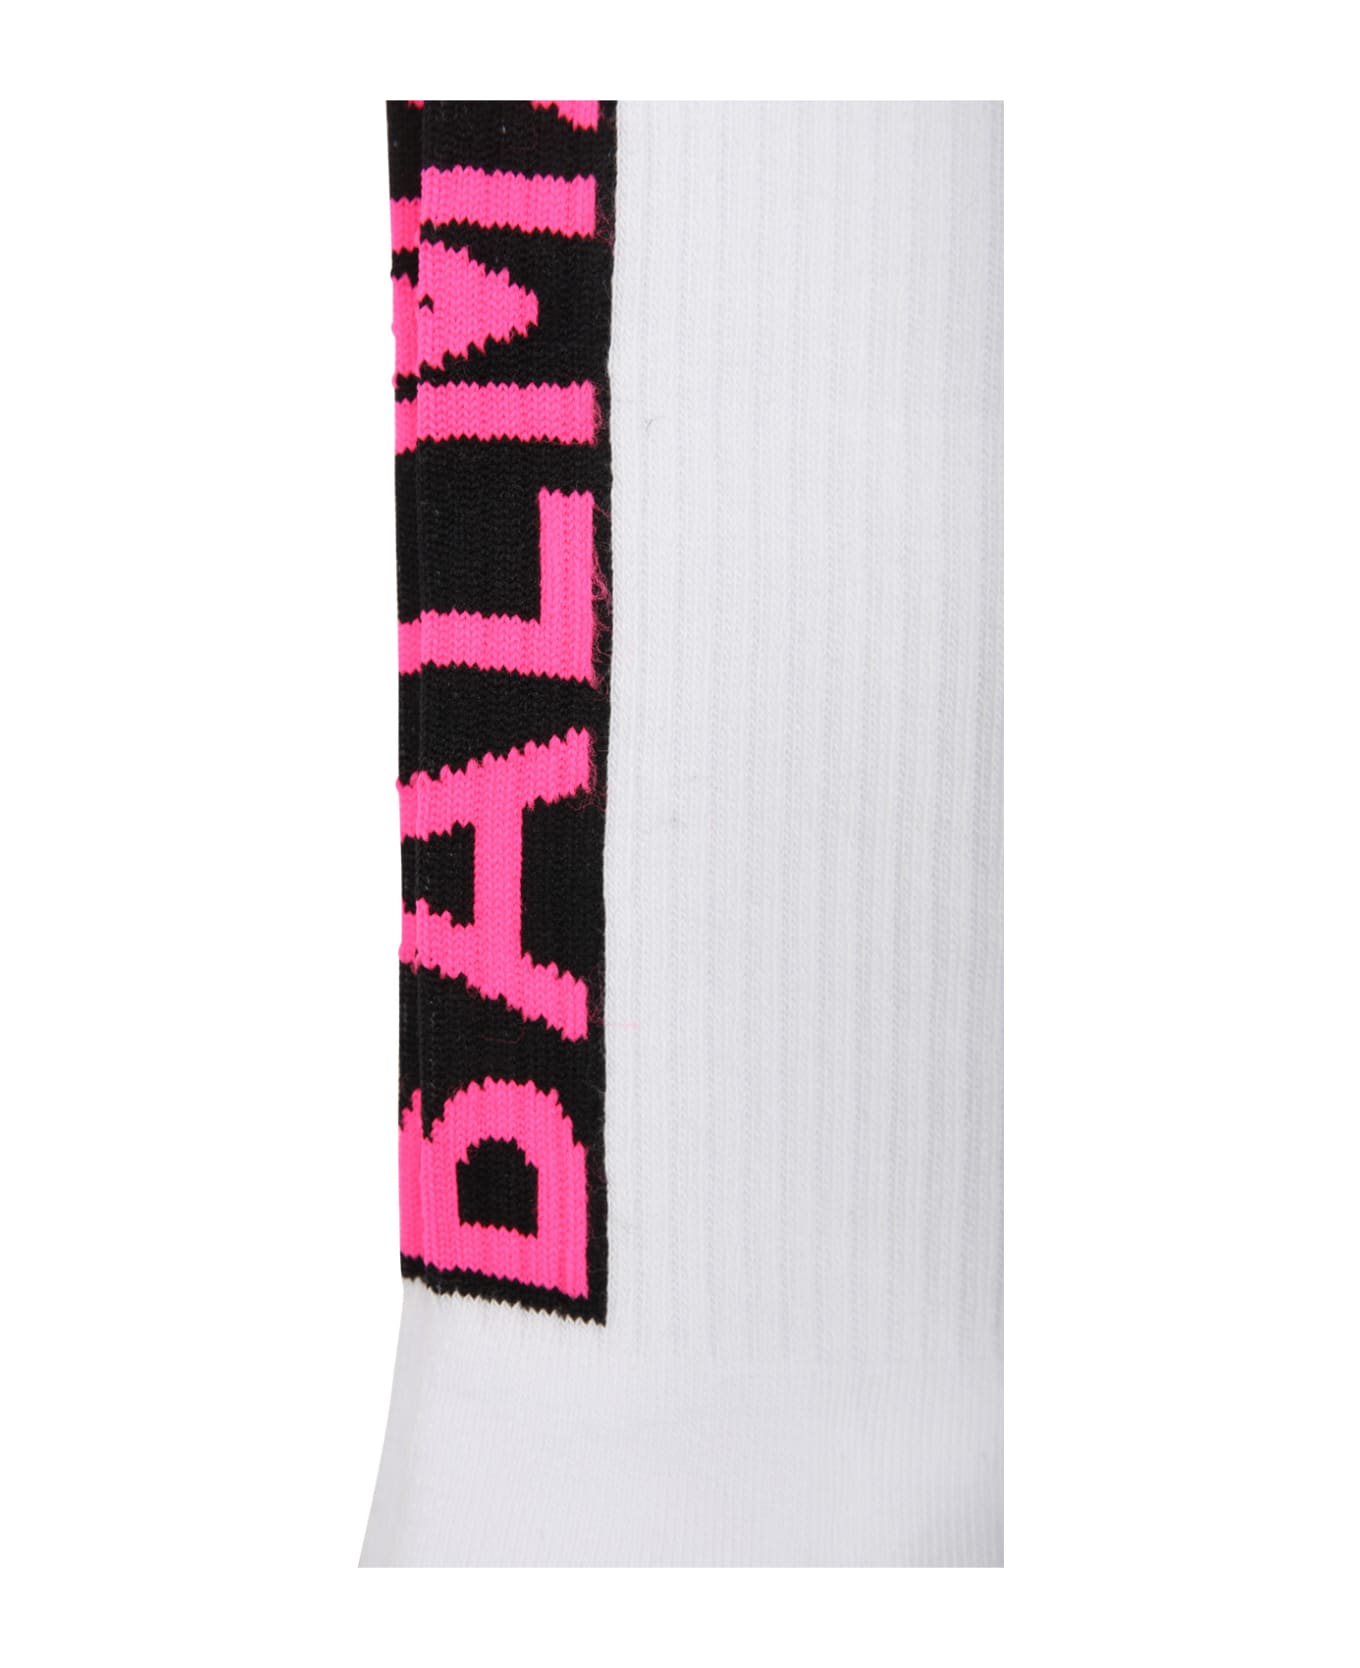 Balmain White Socks For Kids With Logo - White